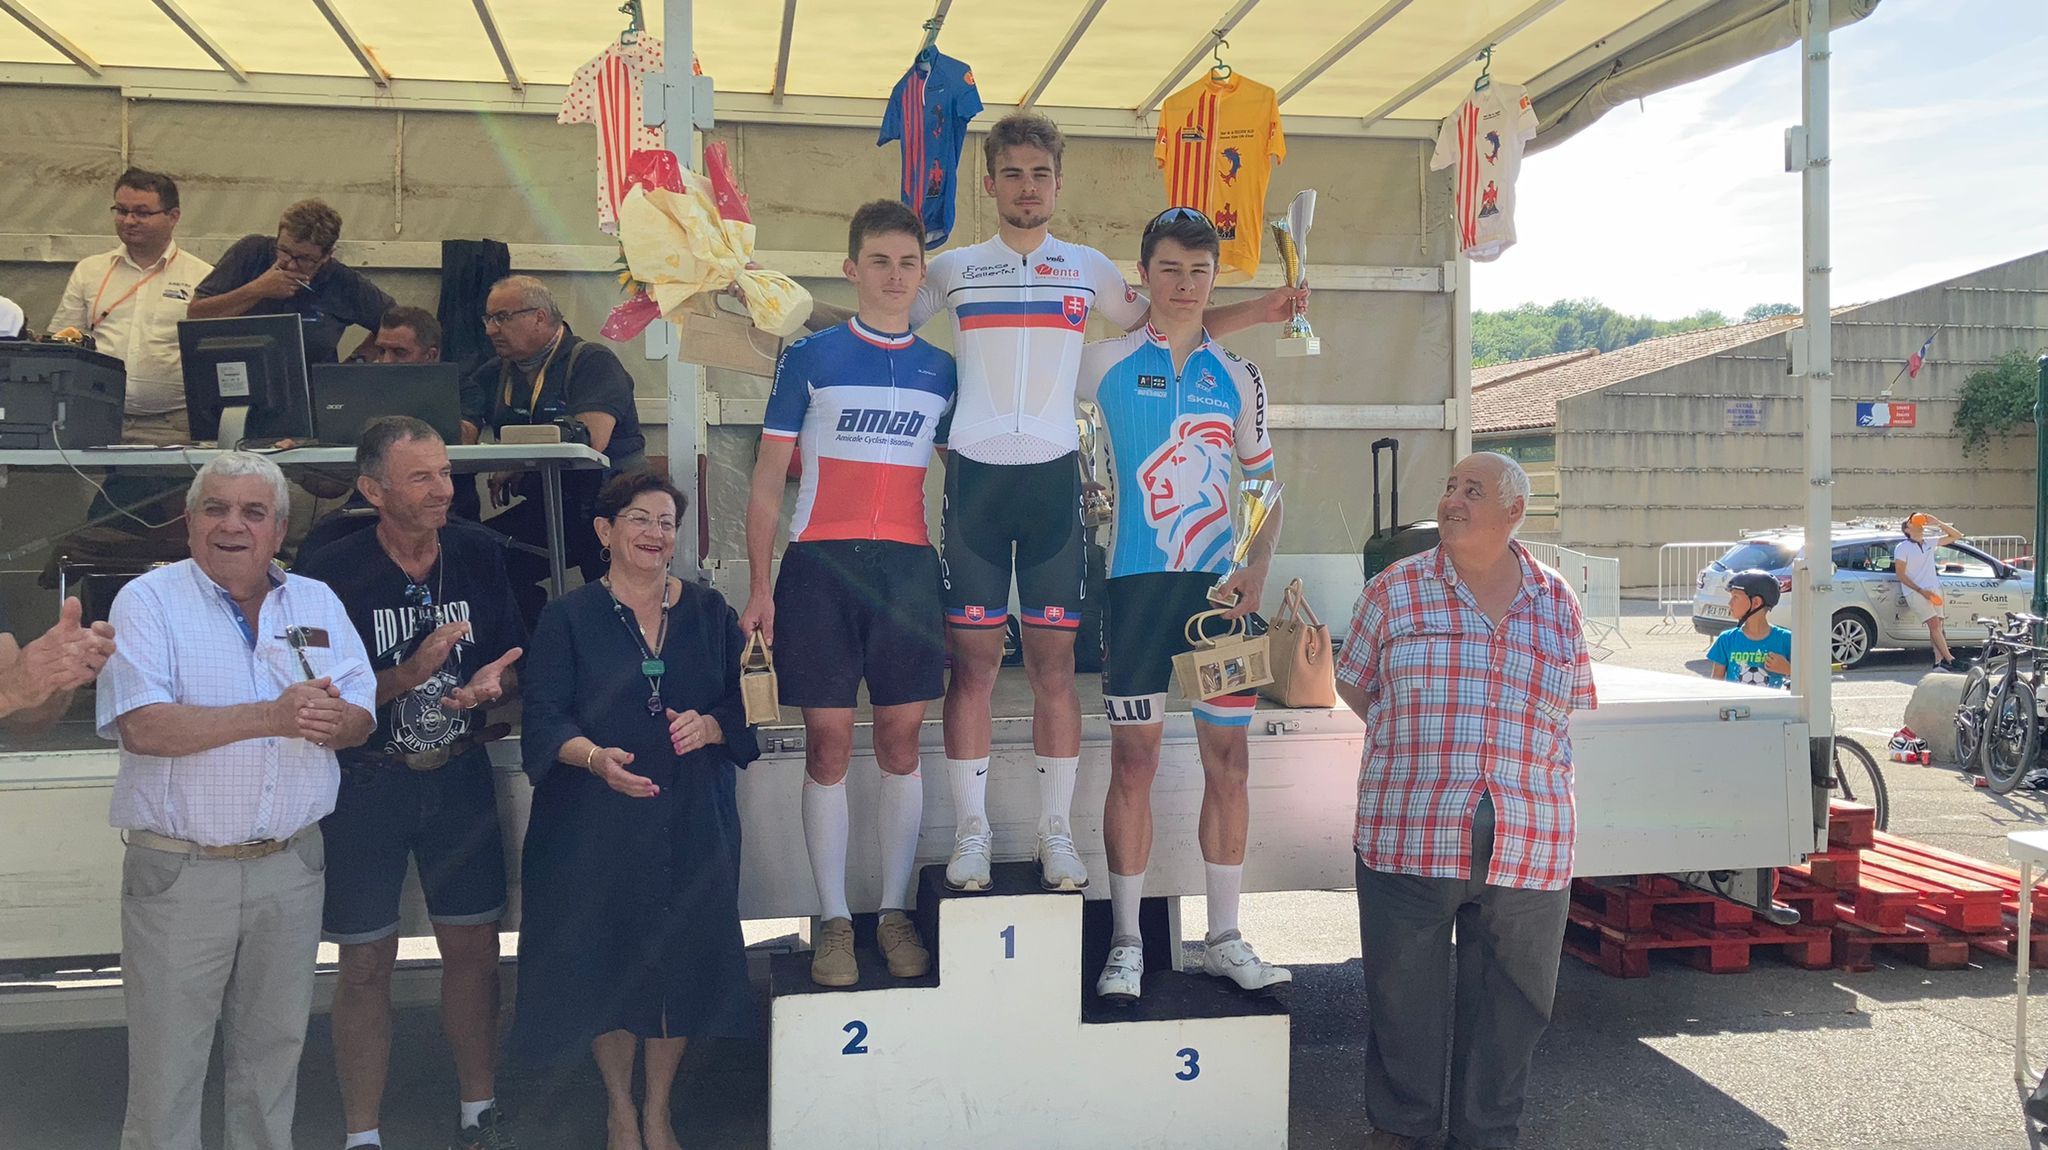 Martin Svrcek vince al Tour de la Region Sud Paca 